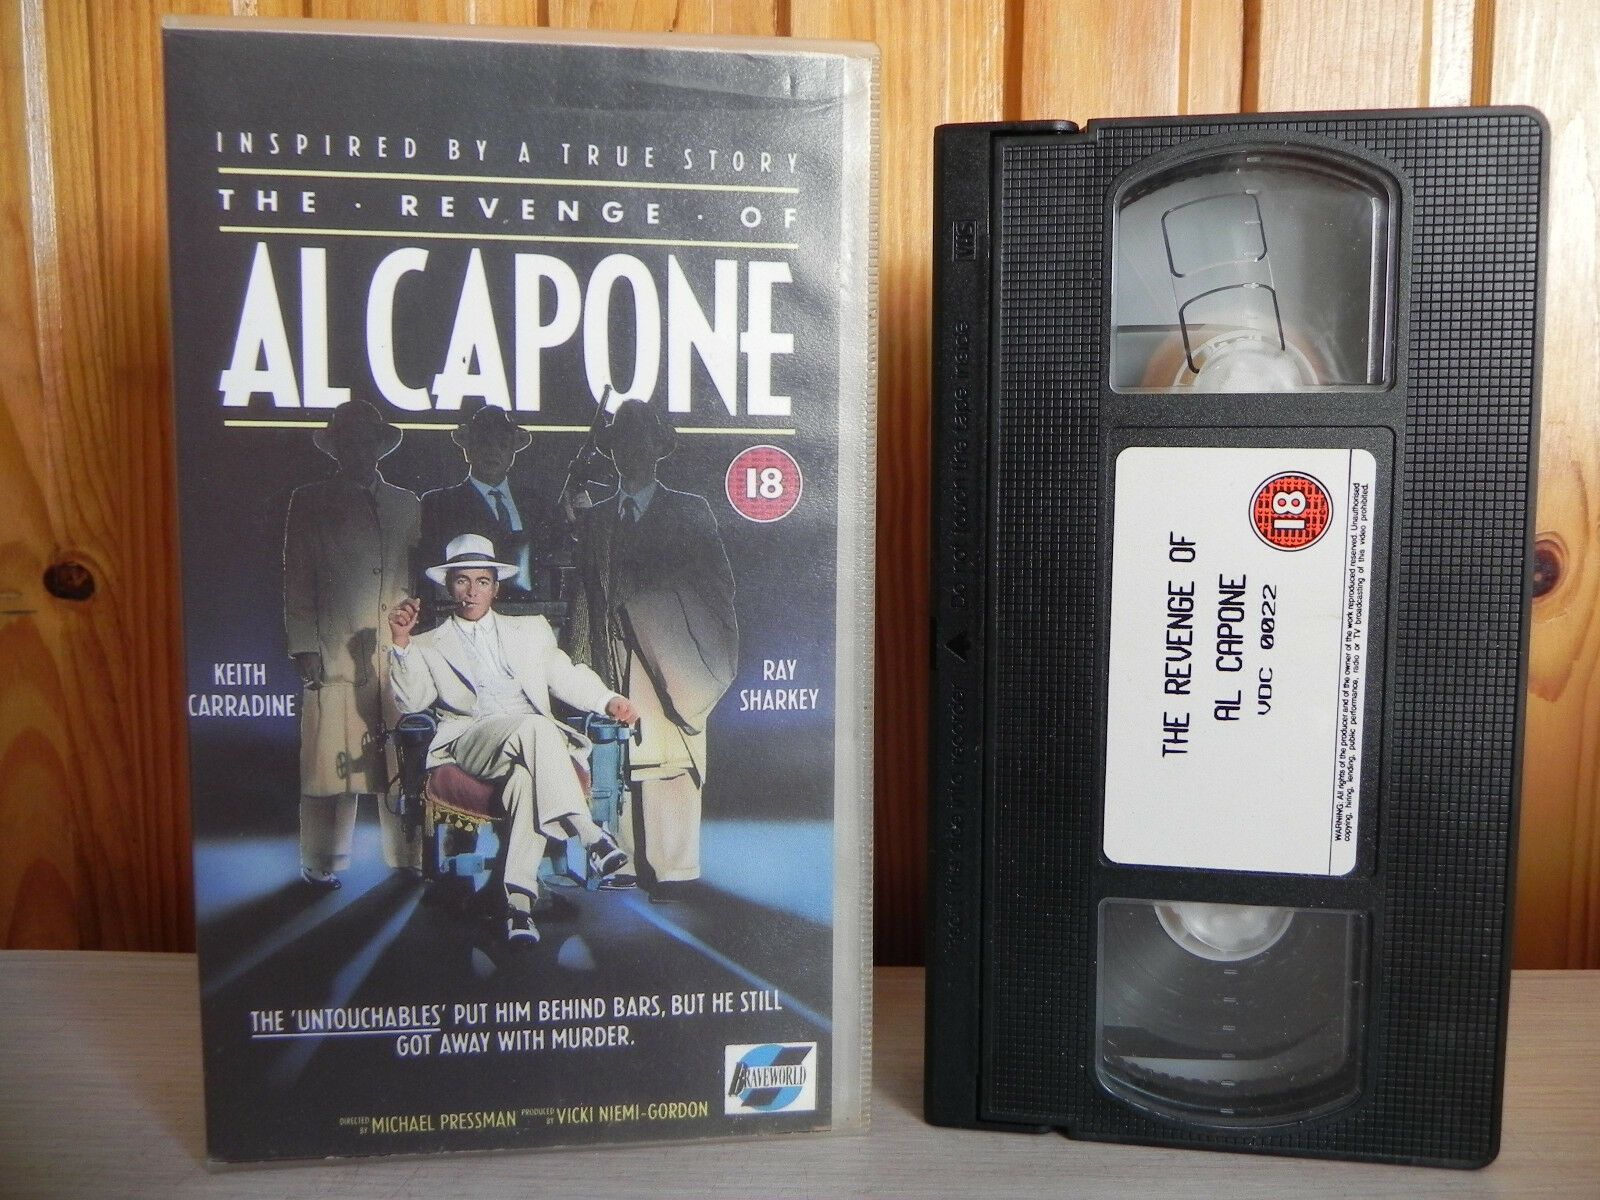 The Revenge Of Al Capone - Braveworld Release - 1989 Crime Thriller Video - VHS-